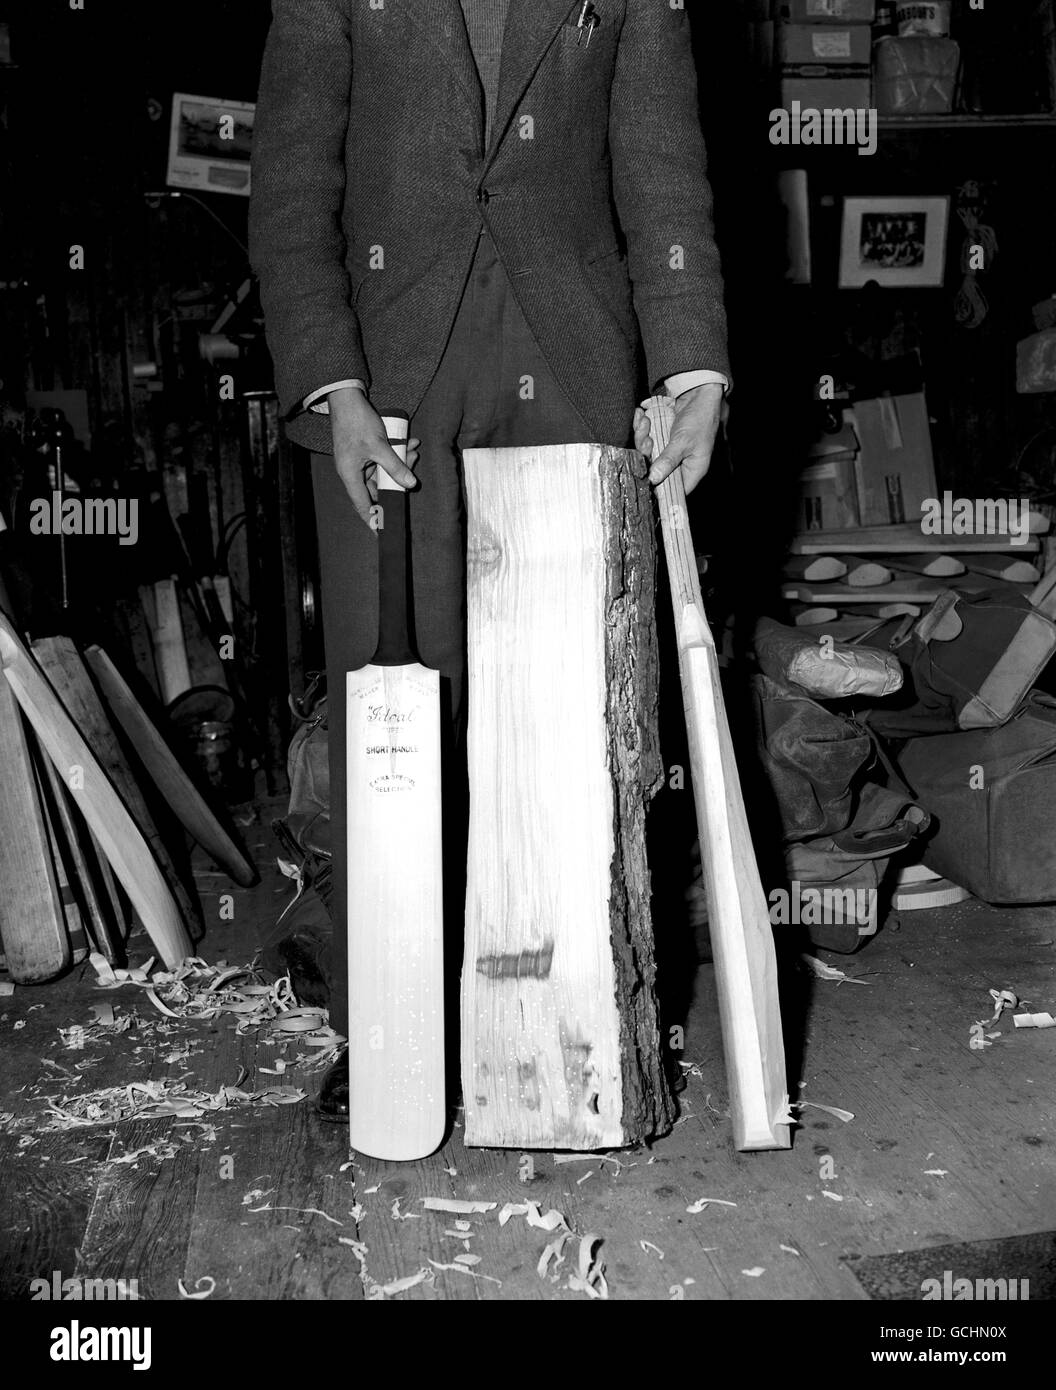 Fabrication de battes de cricket.Les trois étapes d'une batte de cricket comprennent : la fente grossière du saule (C), la coupe grossière (R) et la batte finie (L) Banque D'Images